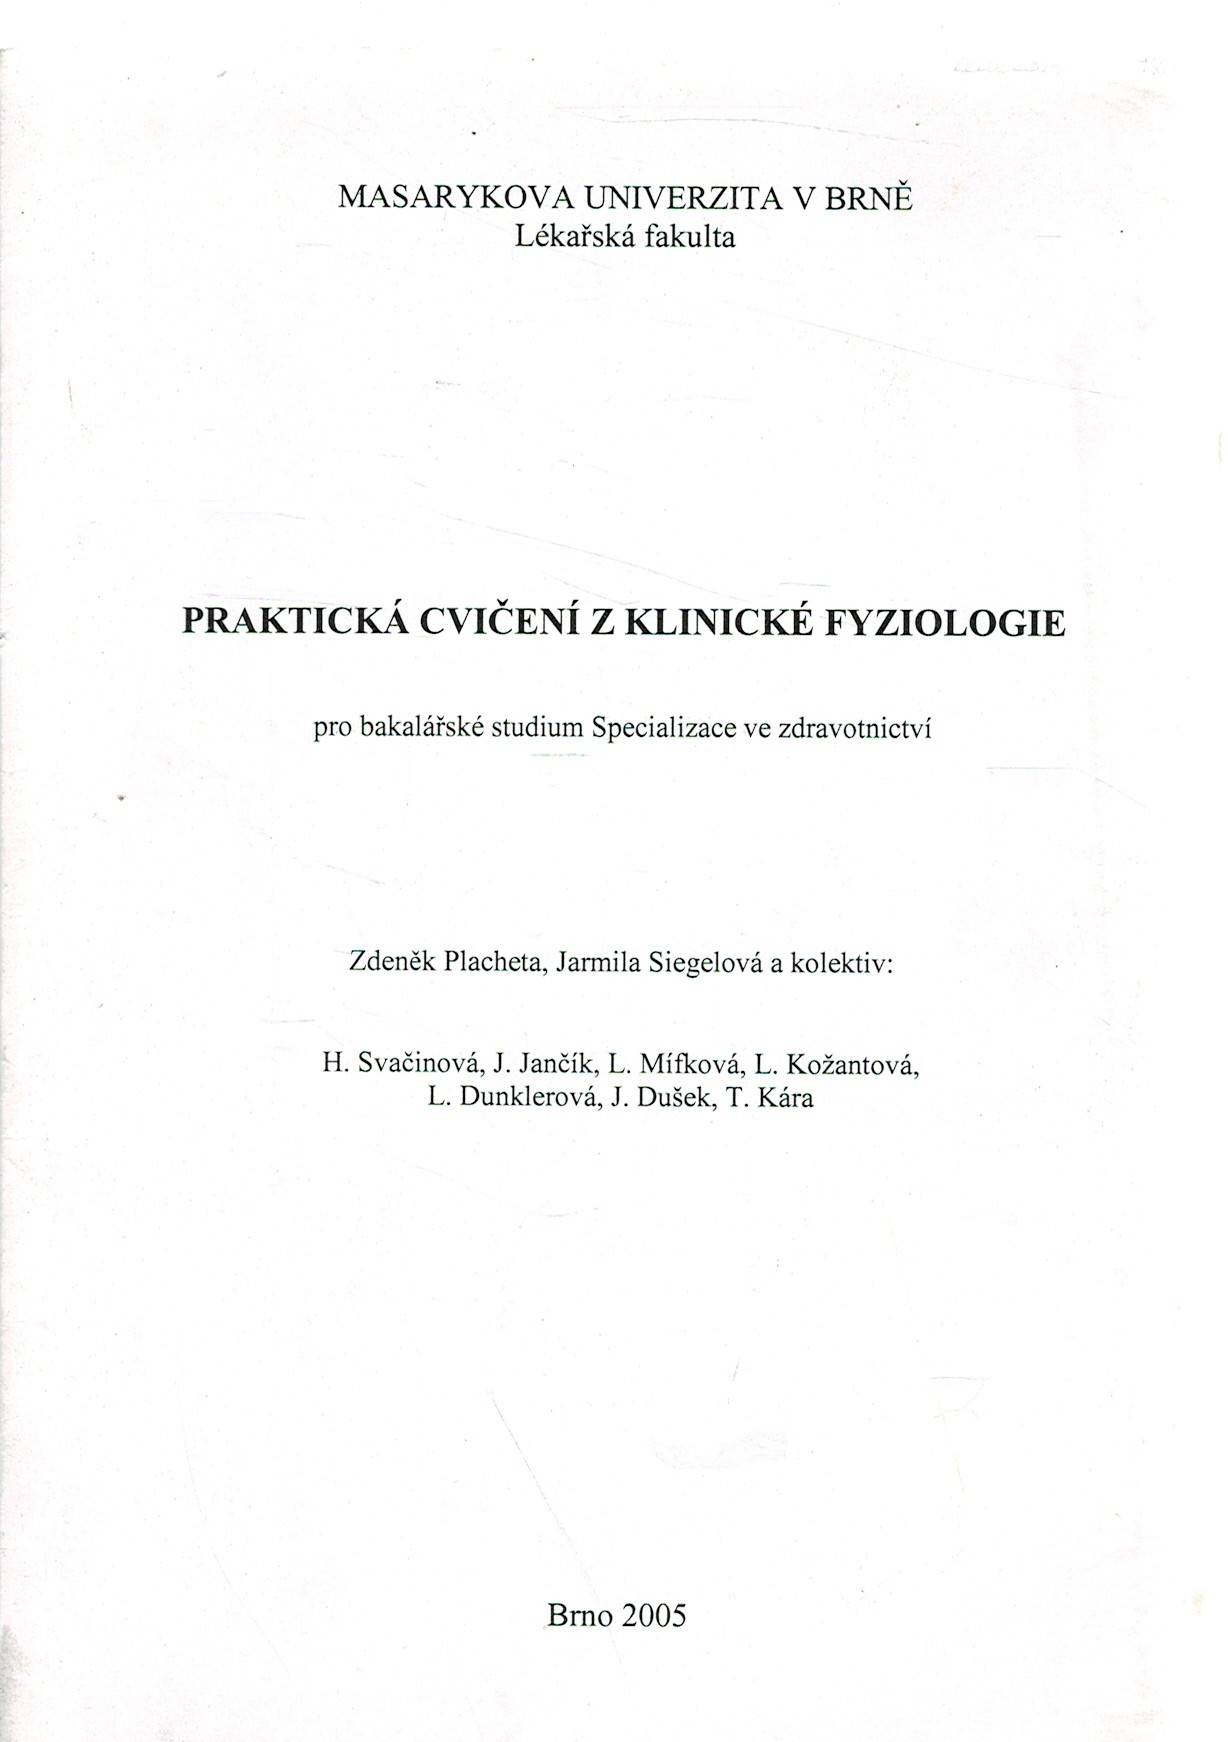 Placheta, Z., Siegelová, J., a kol.: Praktická cvičení z klinické fyziologie